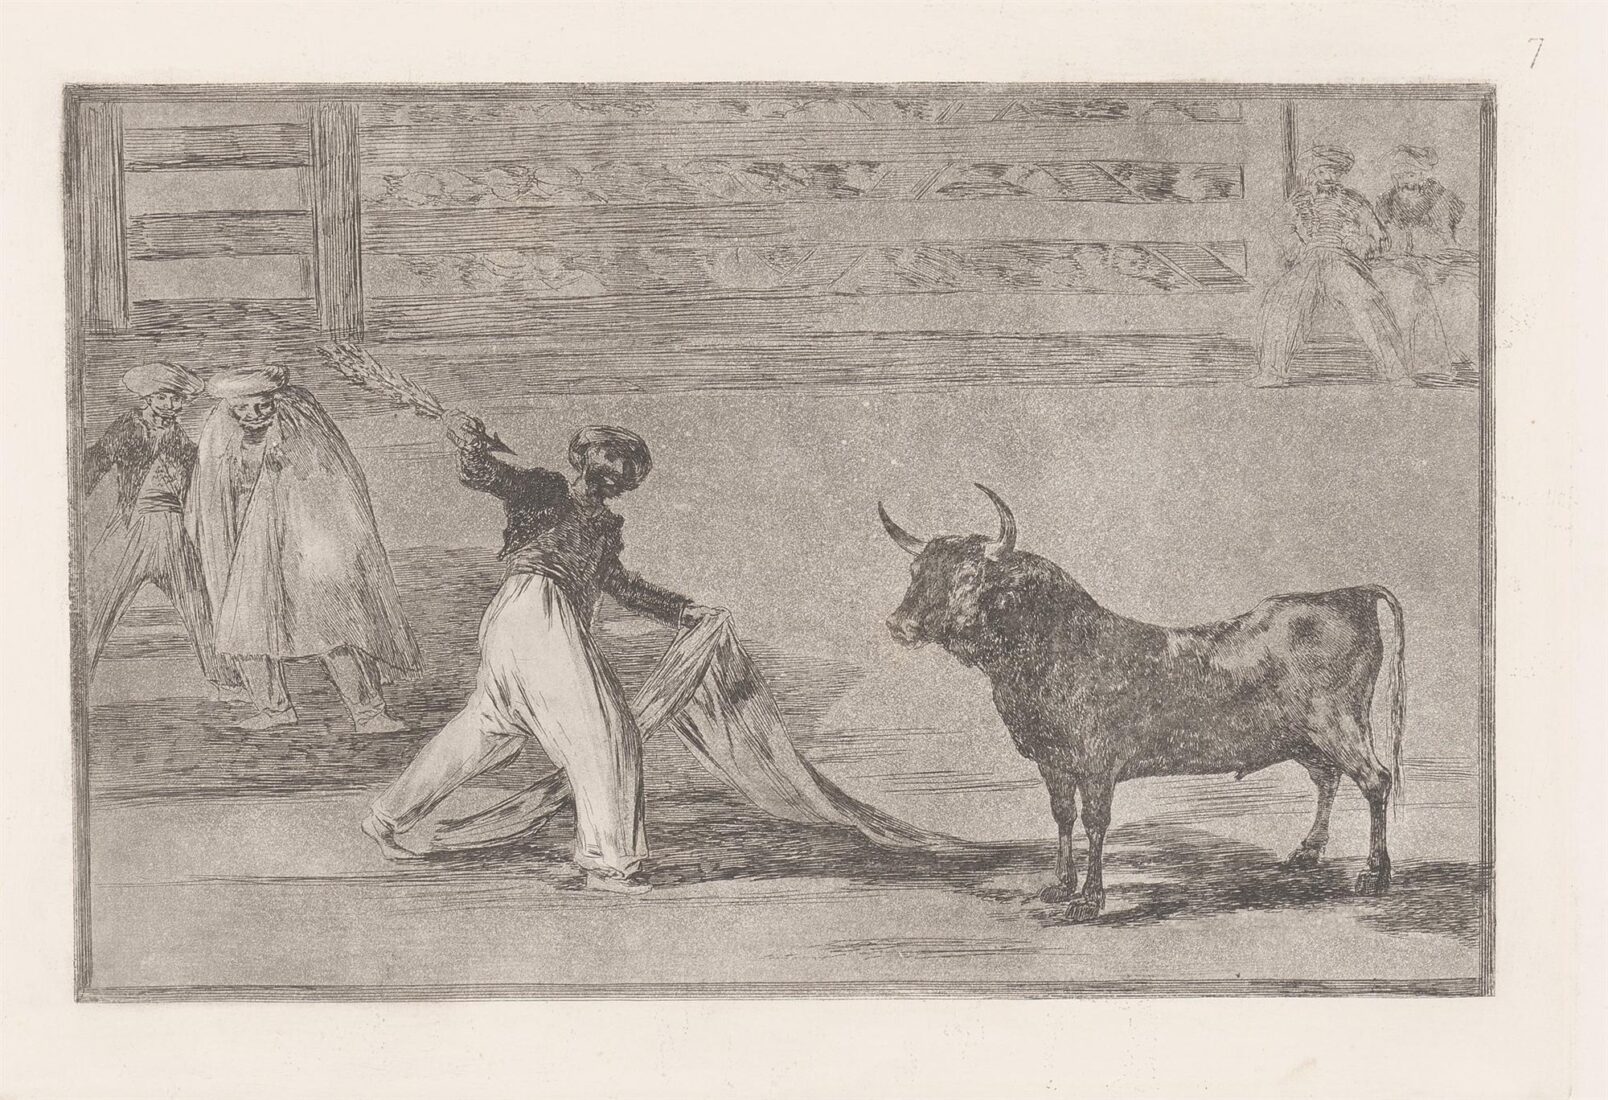 Προέλευση των καμακιών ή μπαντερίγιες - Goya y Lucientes Francisco